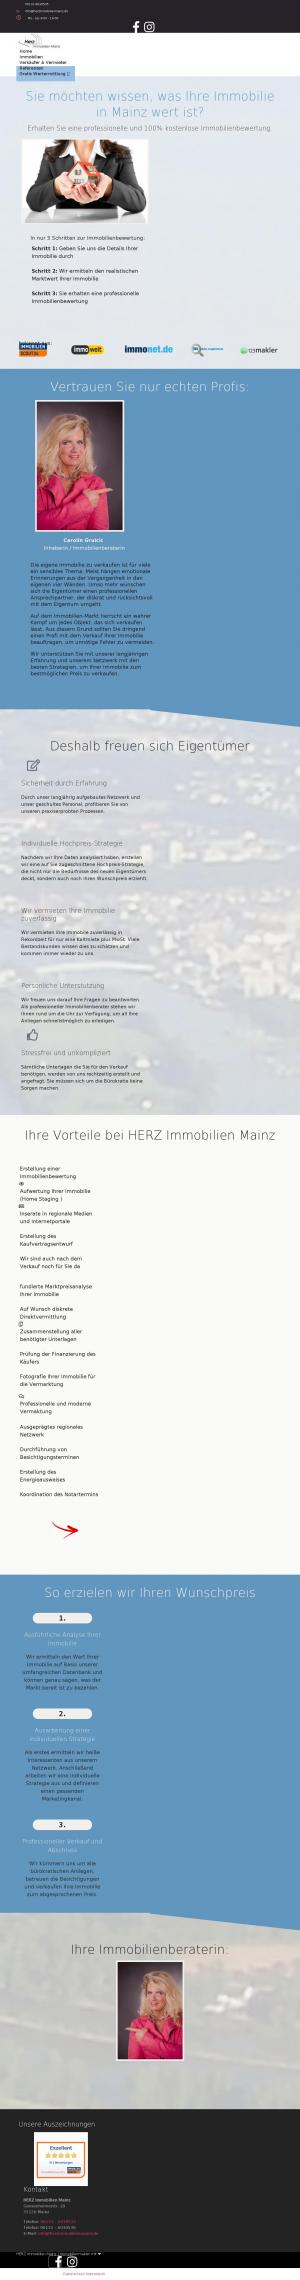 www.herzimmobilienmainz.de